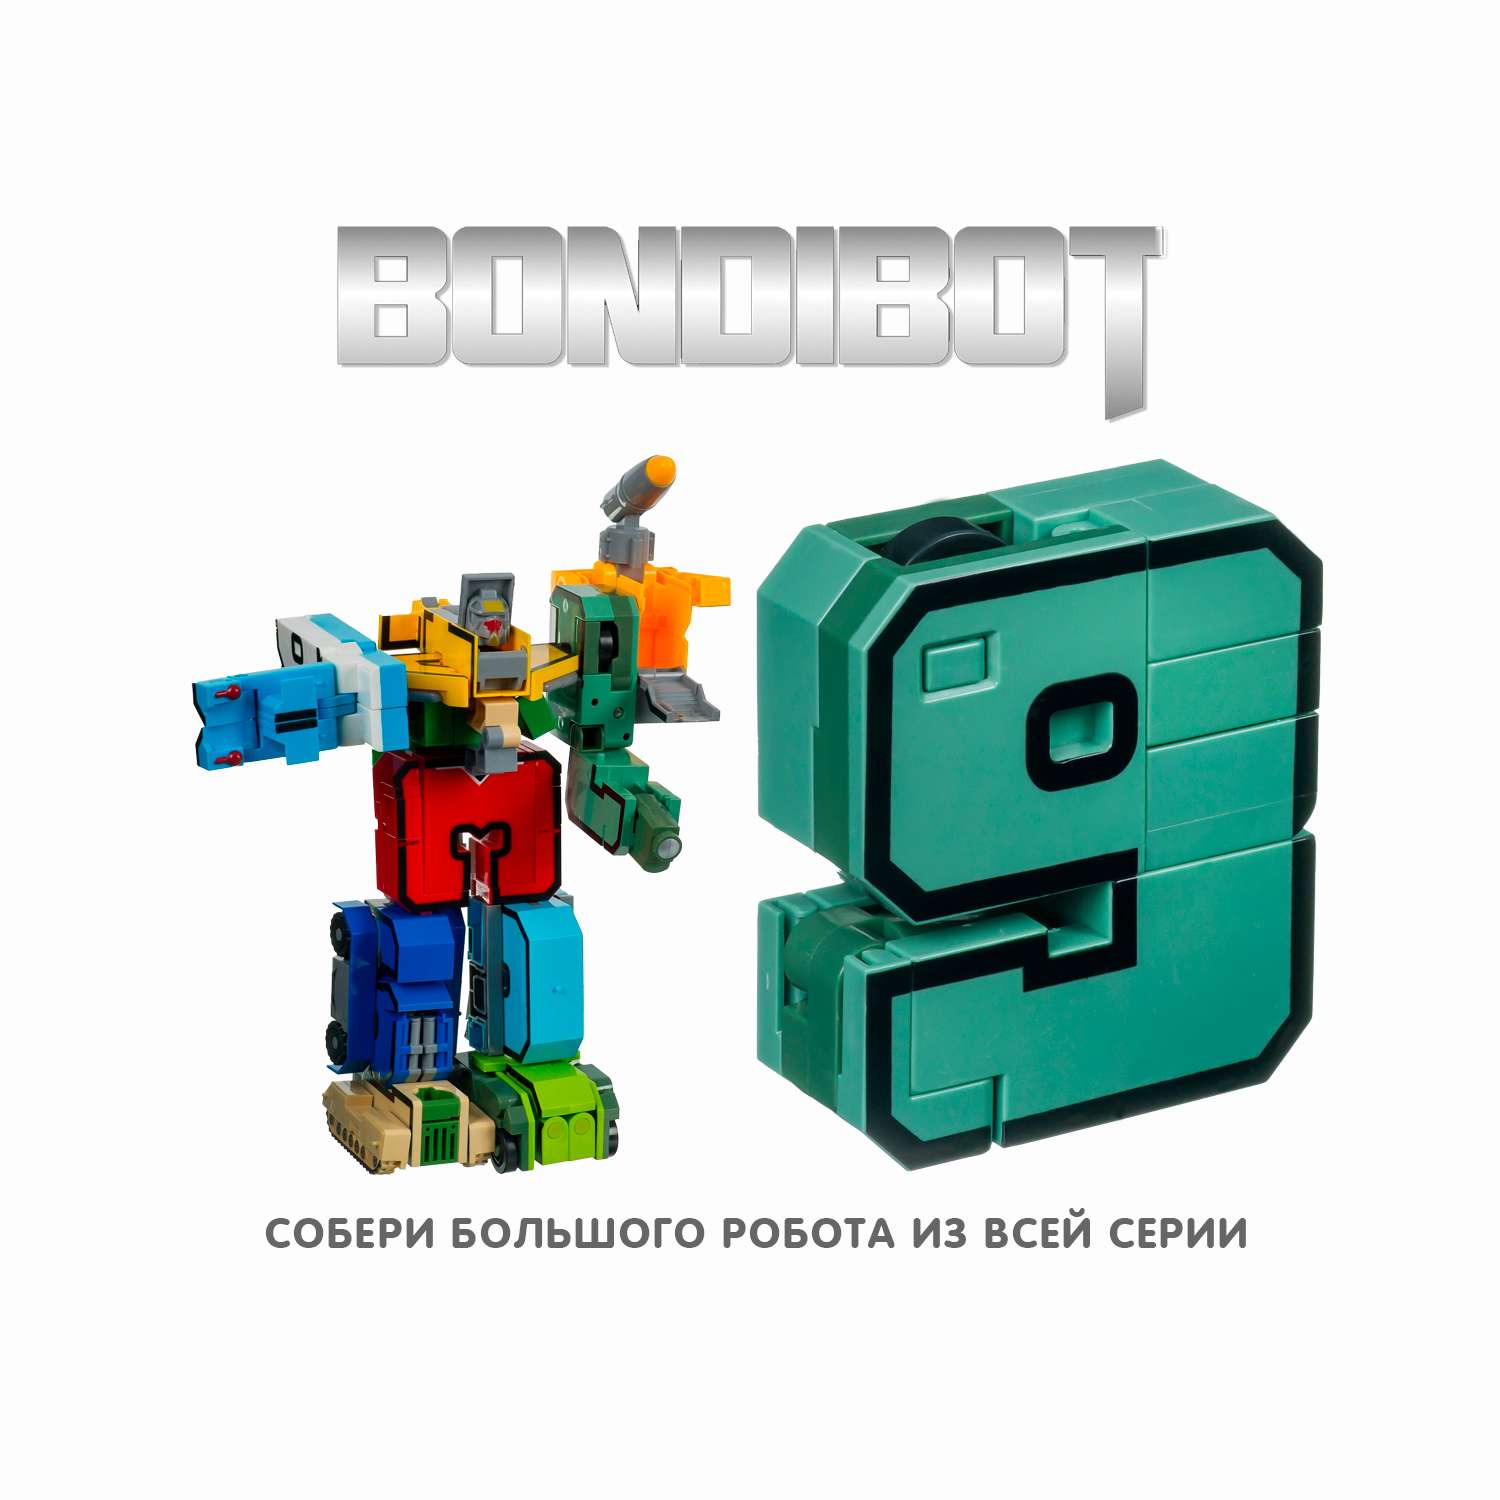 Трансформер BONDIBON bondibot 2 в 1 Девять - фото 8